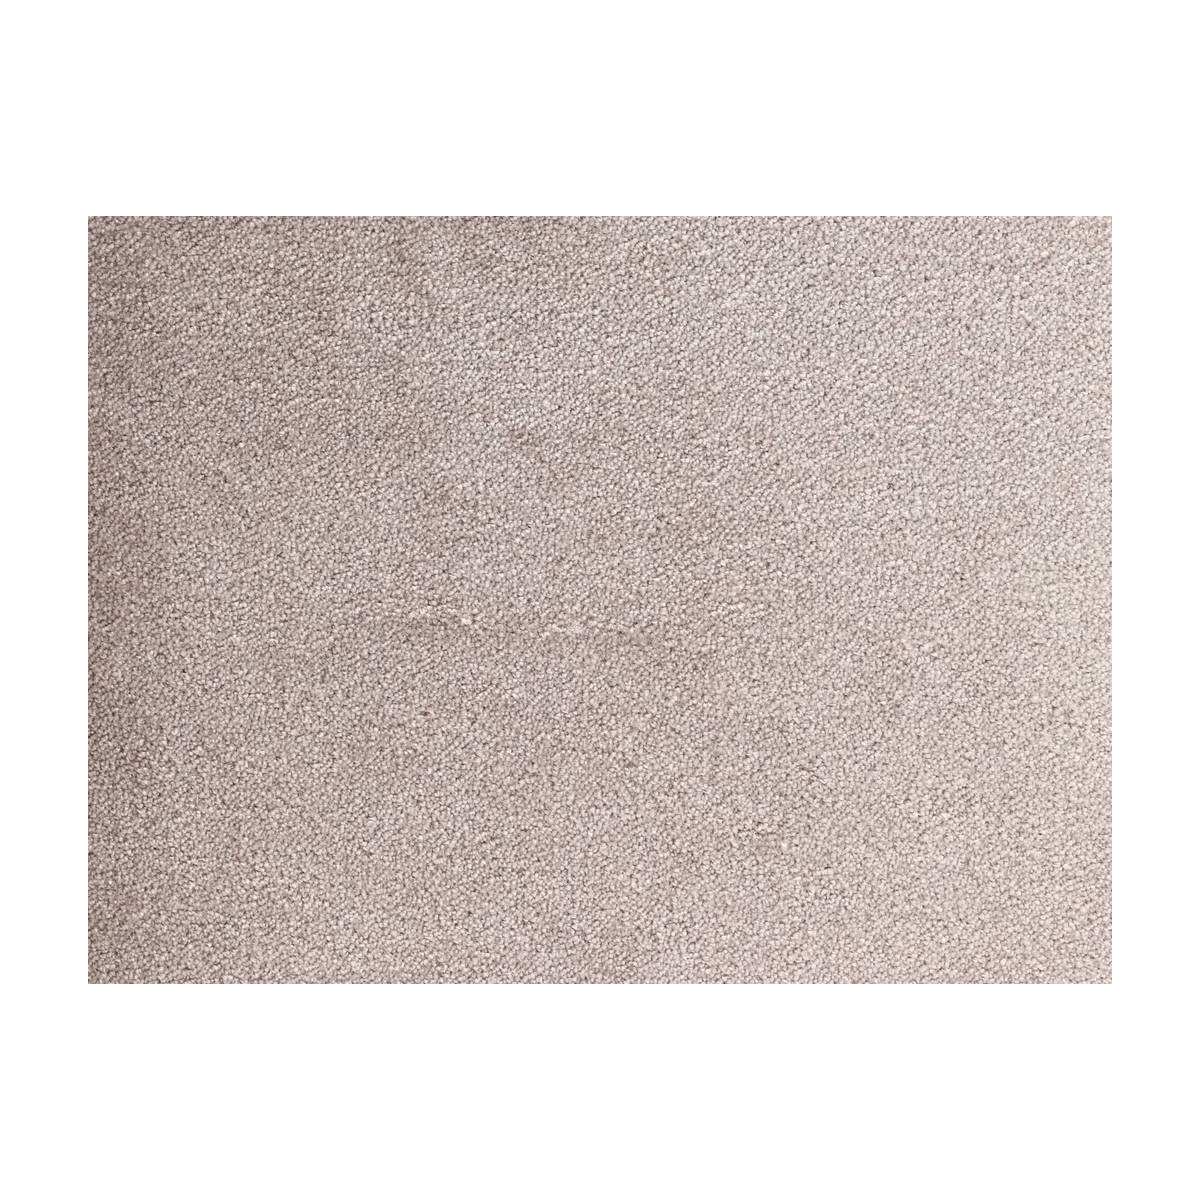 AKCE: 170x230 cm Metrážový koberec Spinta 49